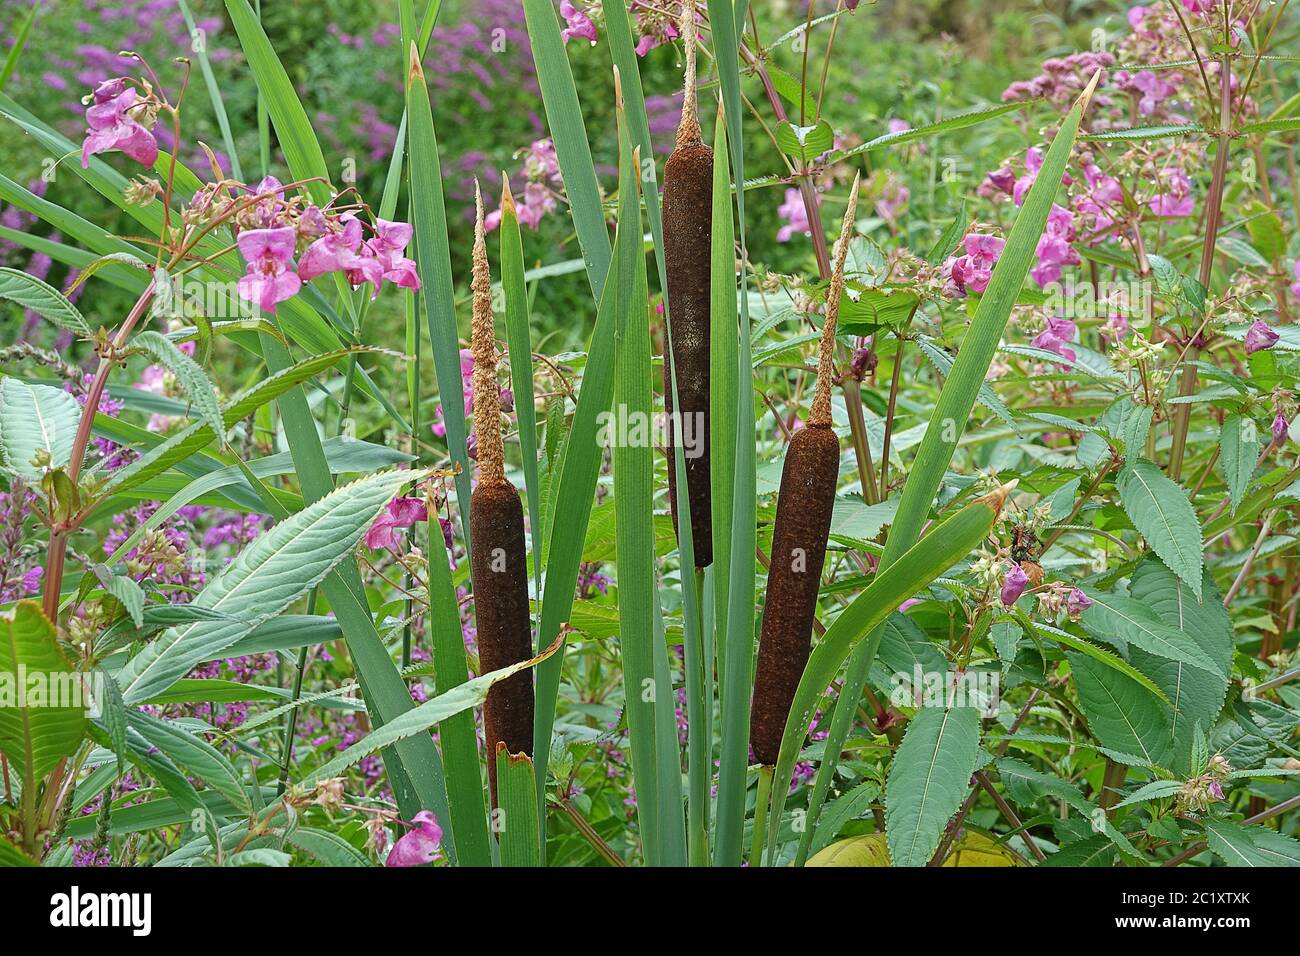 La canne à piston Typha entre l'herbe à printemps indienne Impatiens glandulifera Banque D'Images